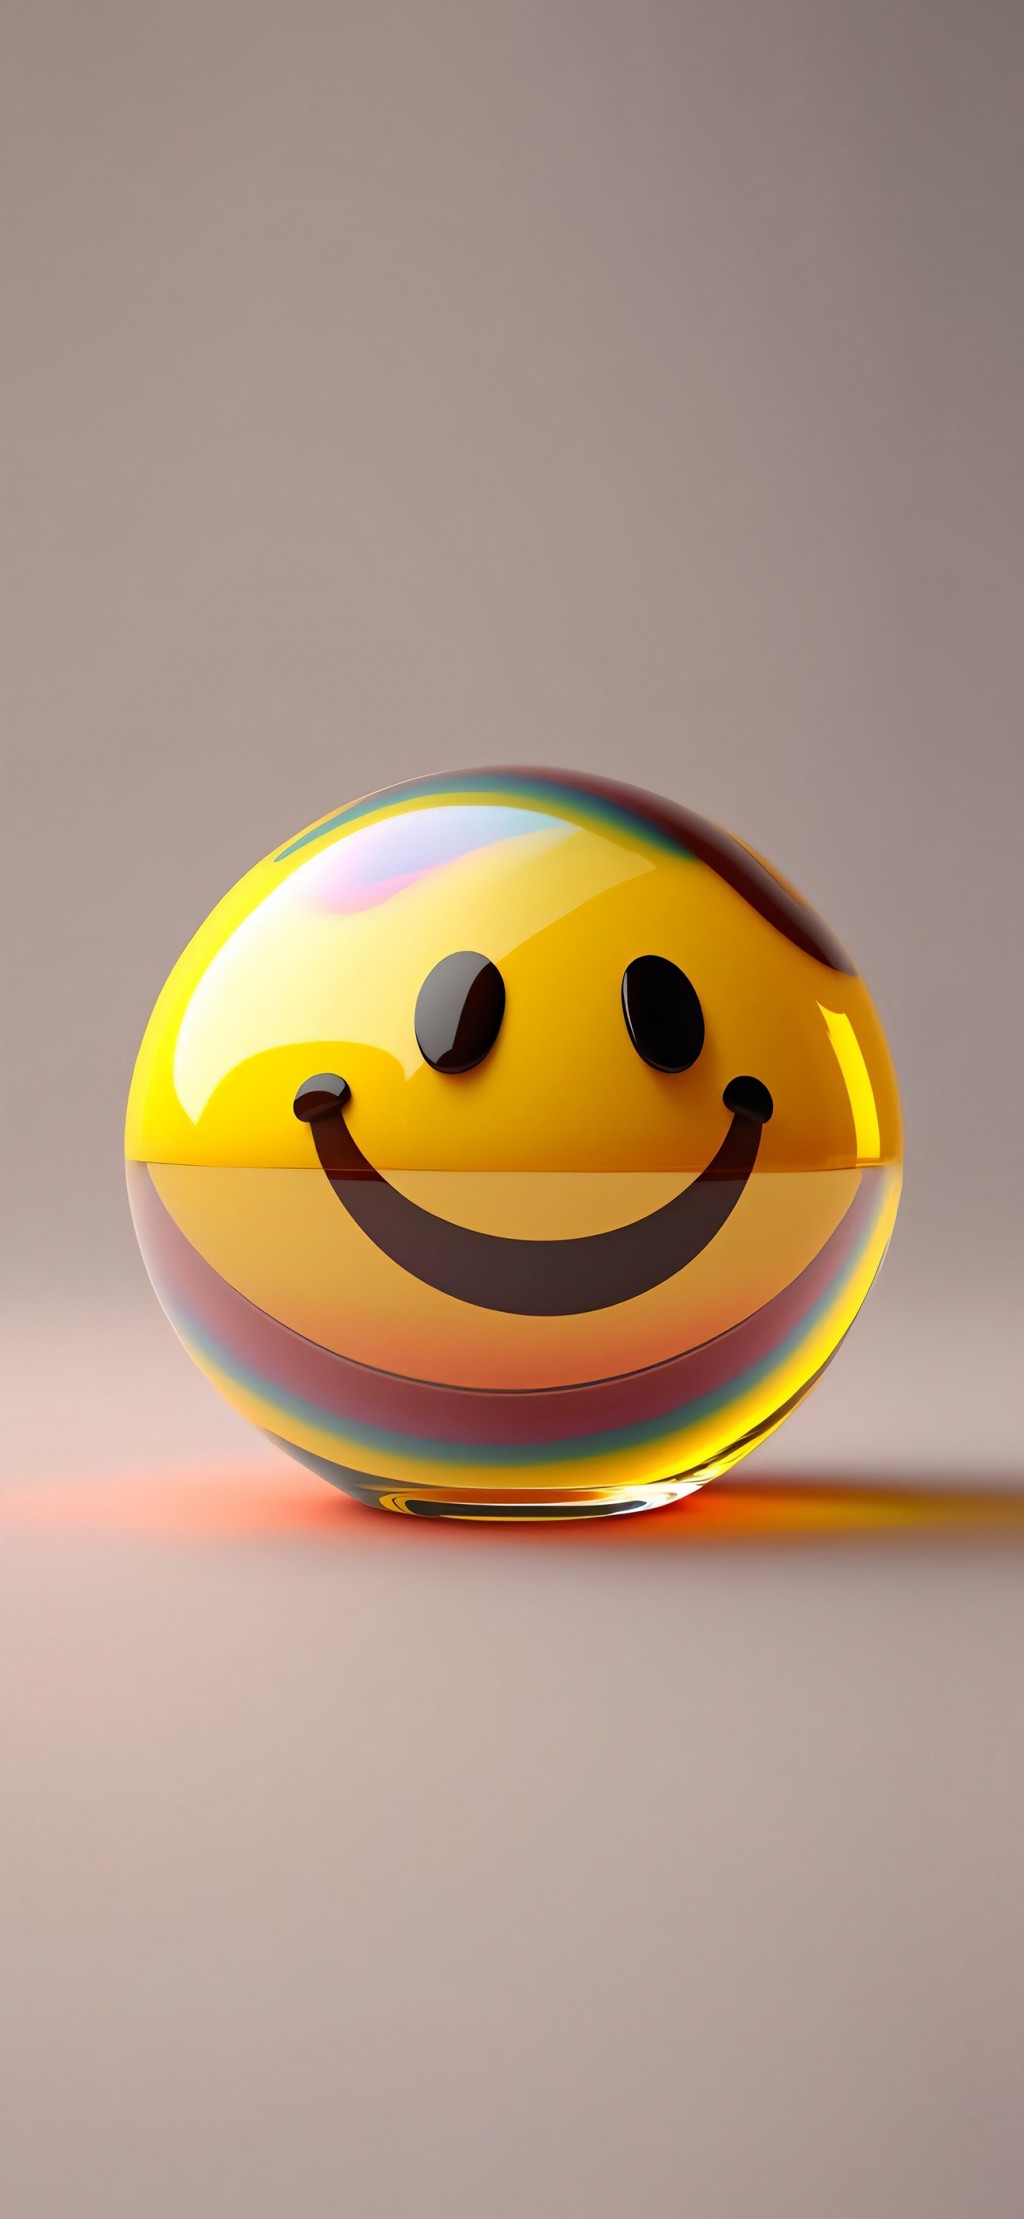 创意3D立体可爱emoji微笑表情包手机壁纸